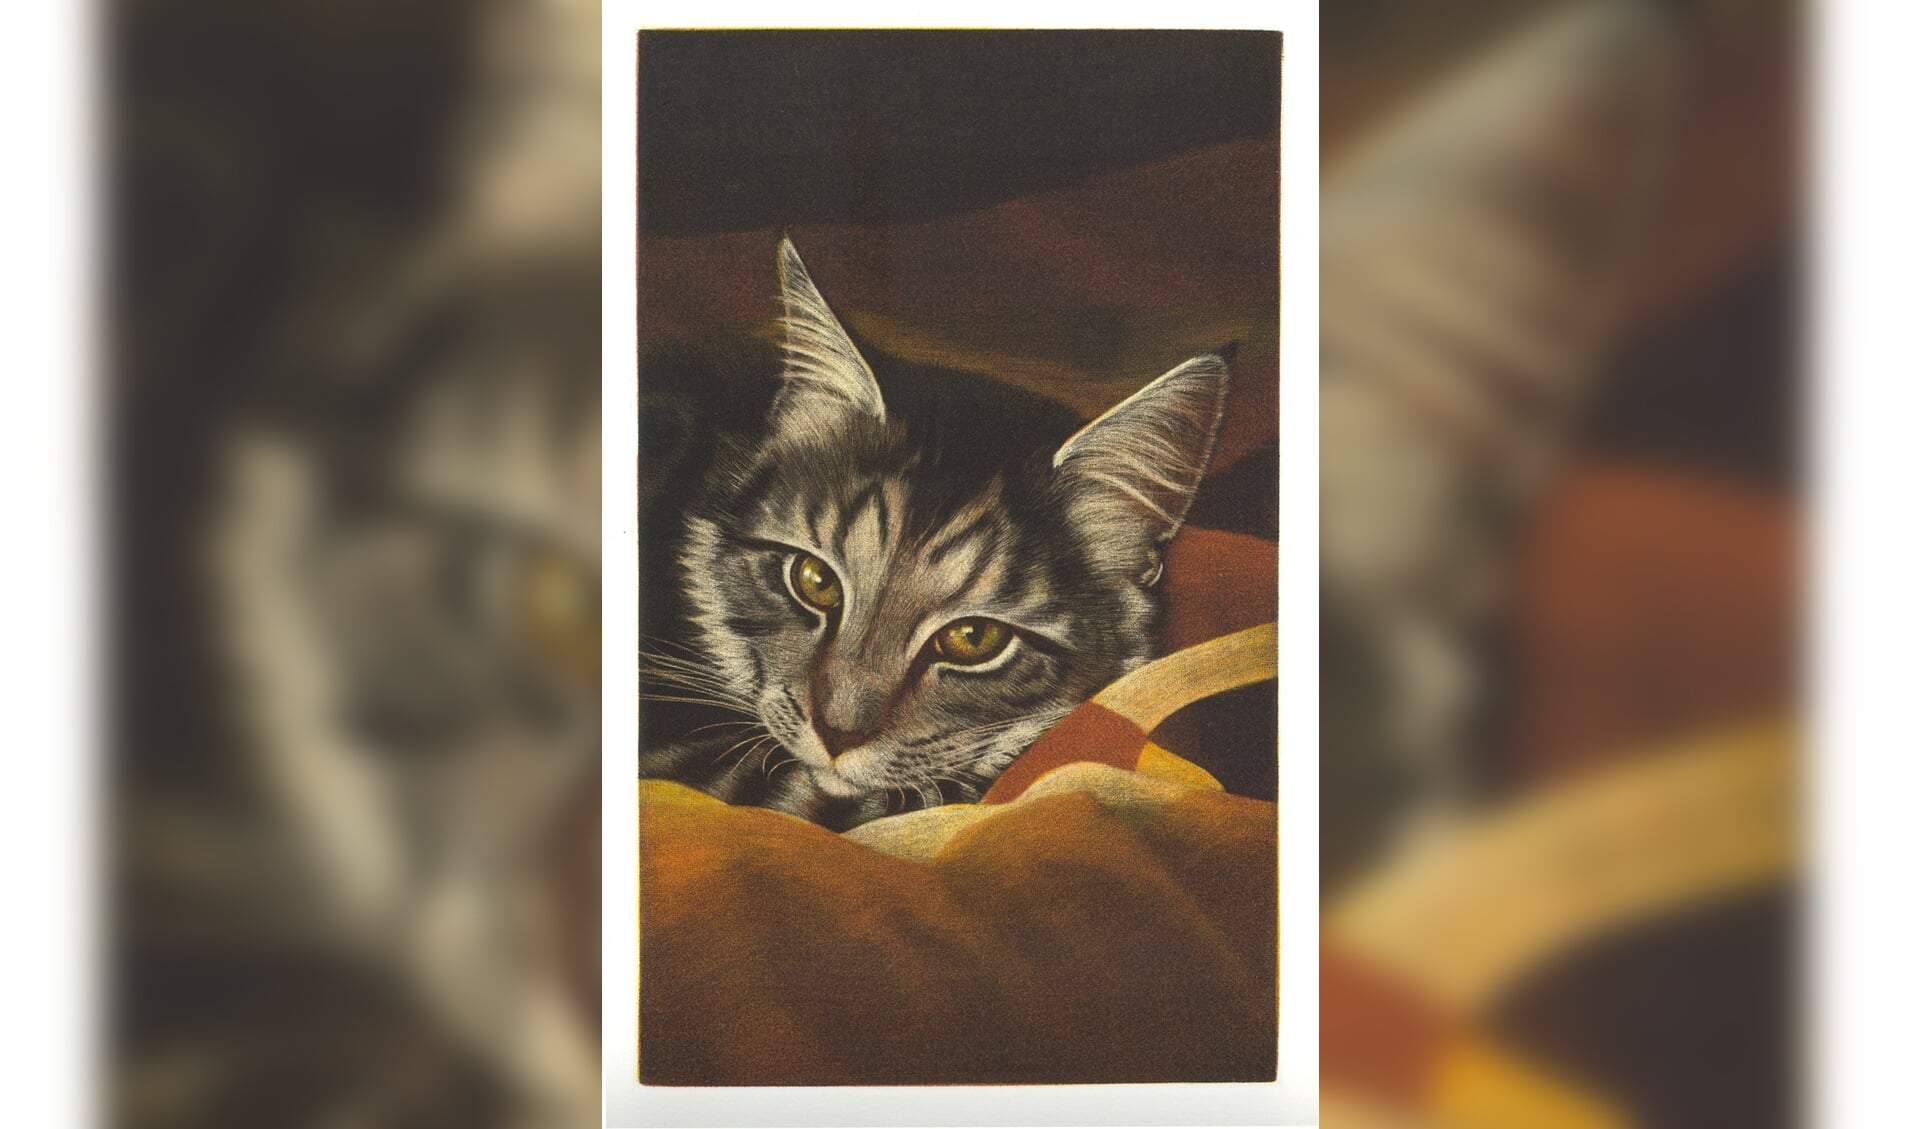 De ogen van mijn kat, een mezzotint van Marianne Stam